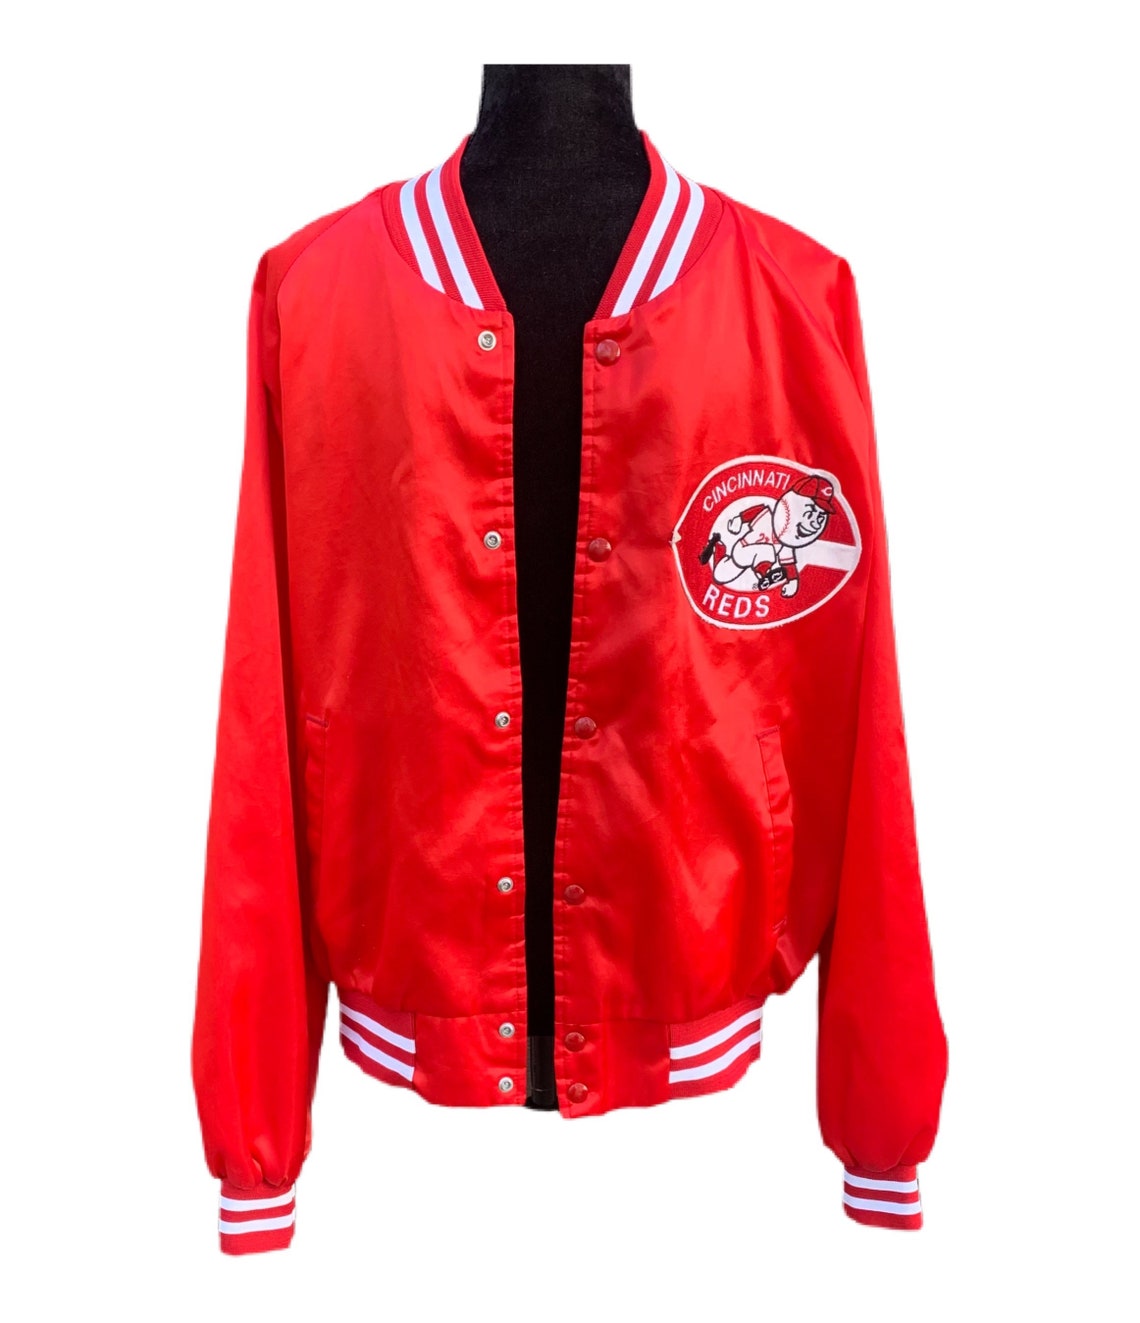 Cincinnati Reds Jacket Vintage 80s Red Satin Bomber Jacket | Etsy